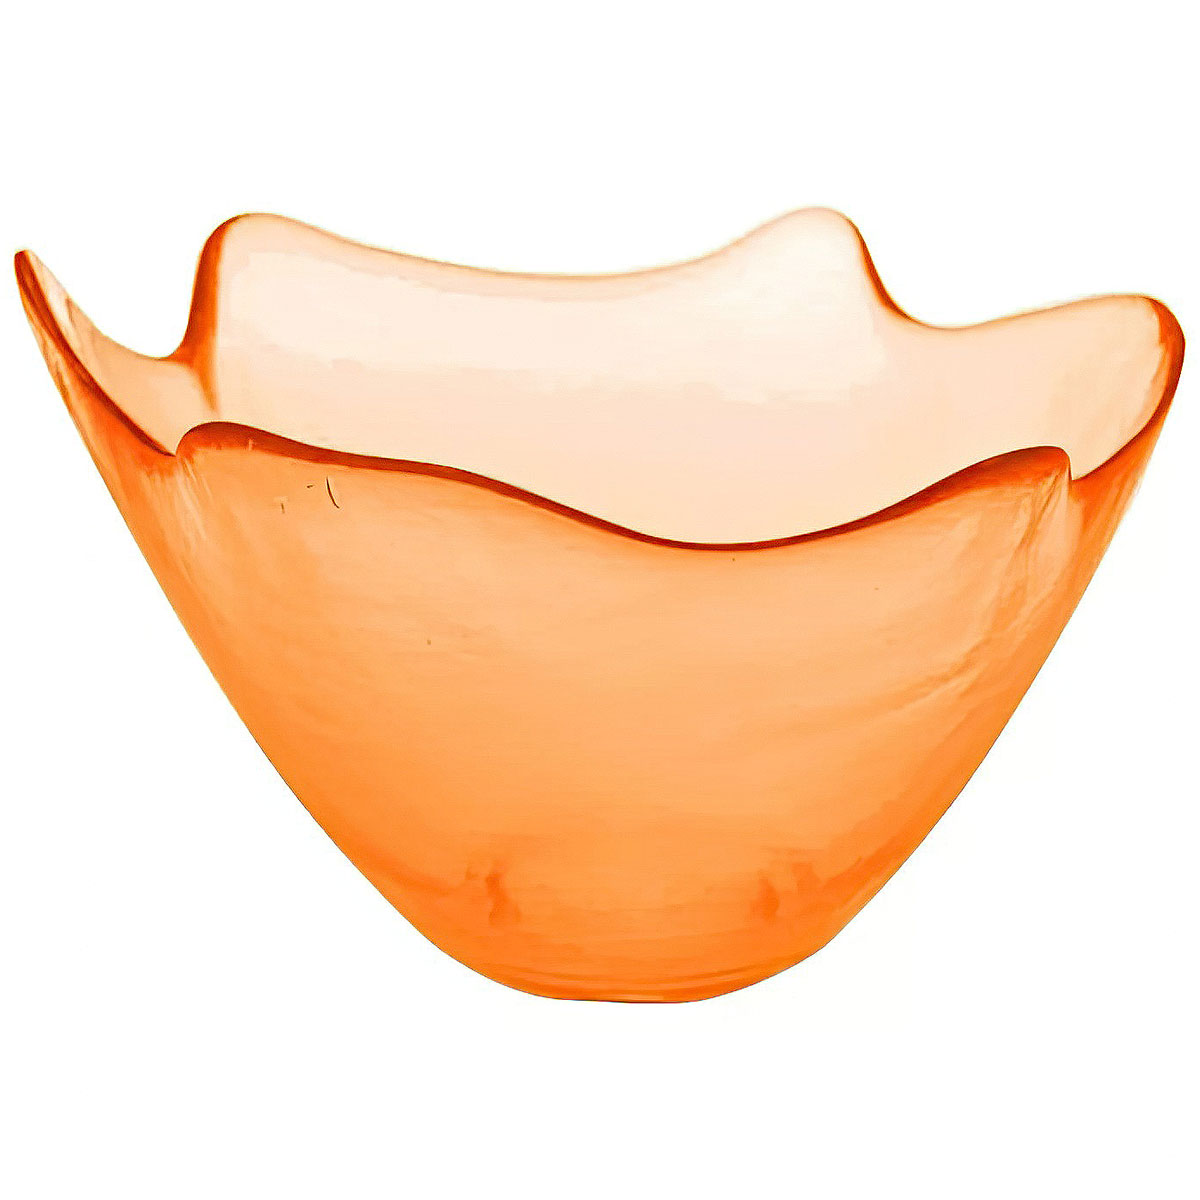 Ваза для фруктов San Miguel Feston 12см, цвет оранжевый saival classic рефлекс поводок светоотражающий оранжевый